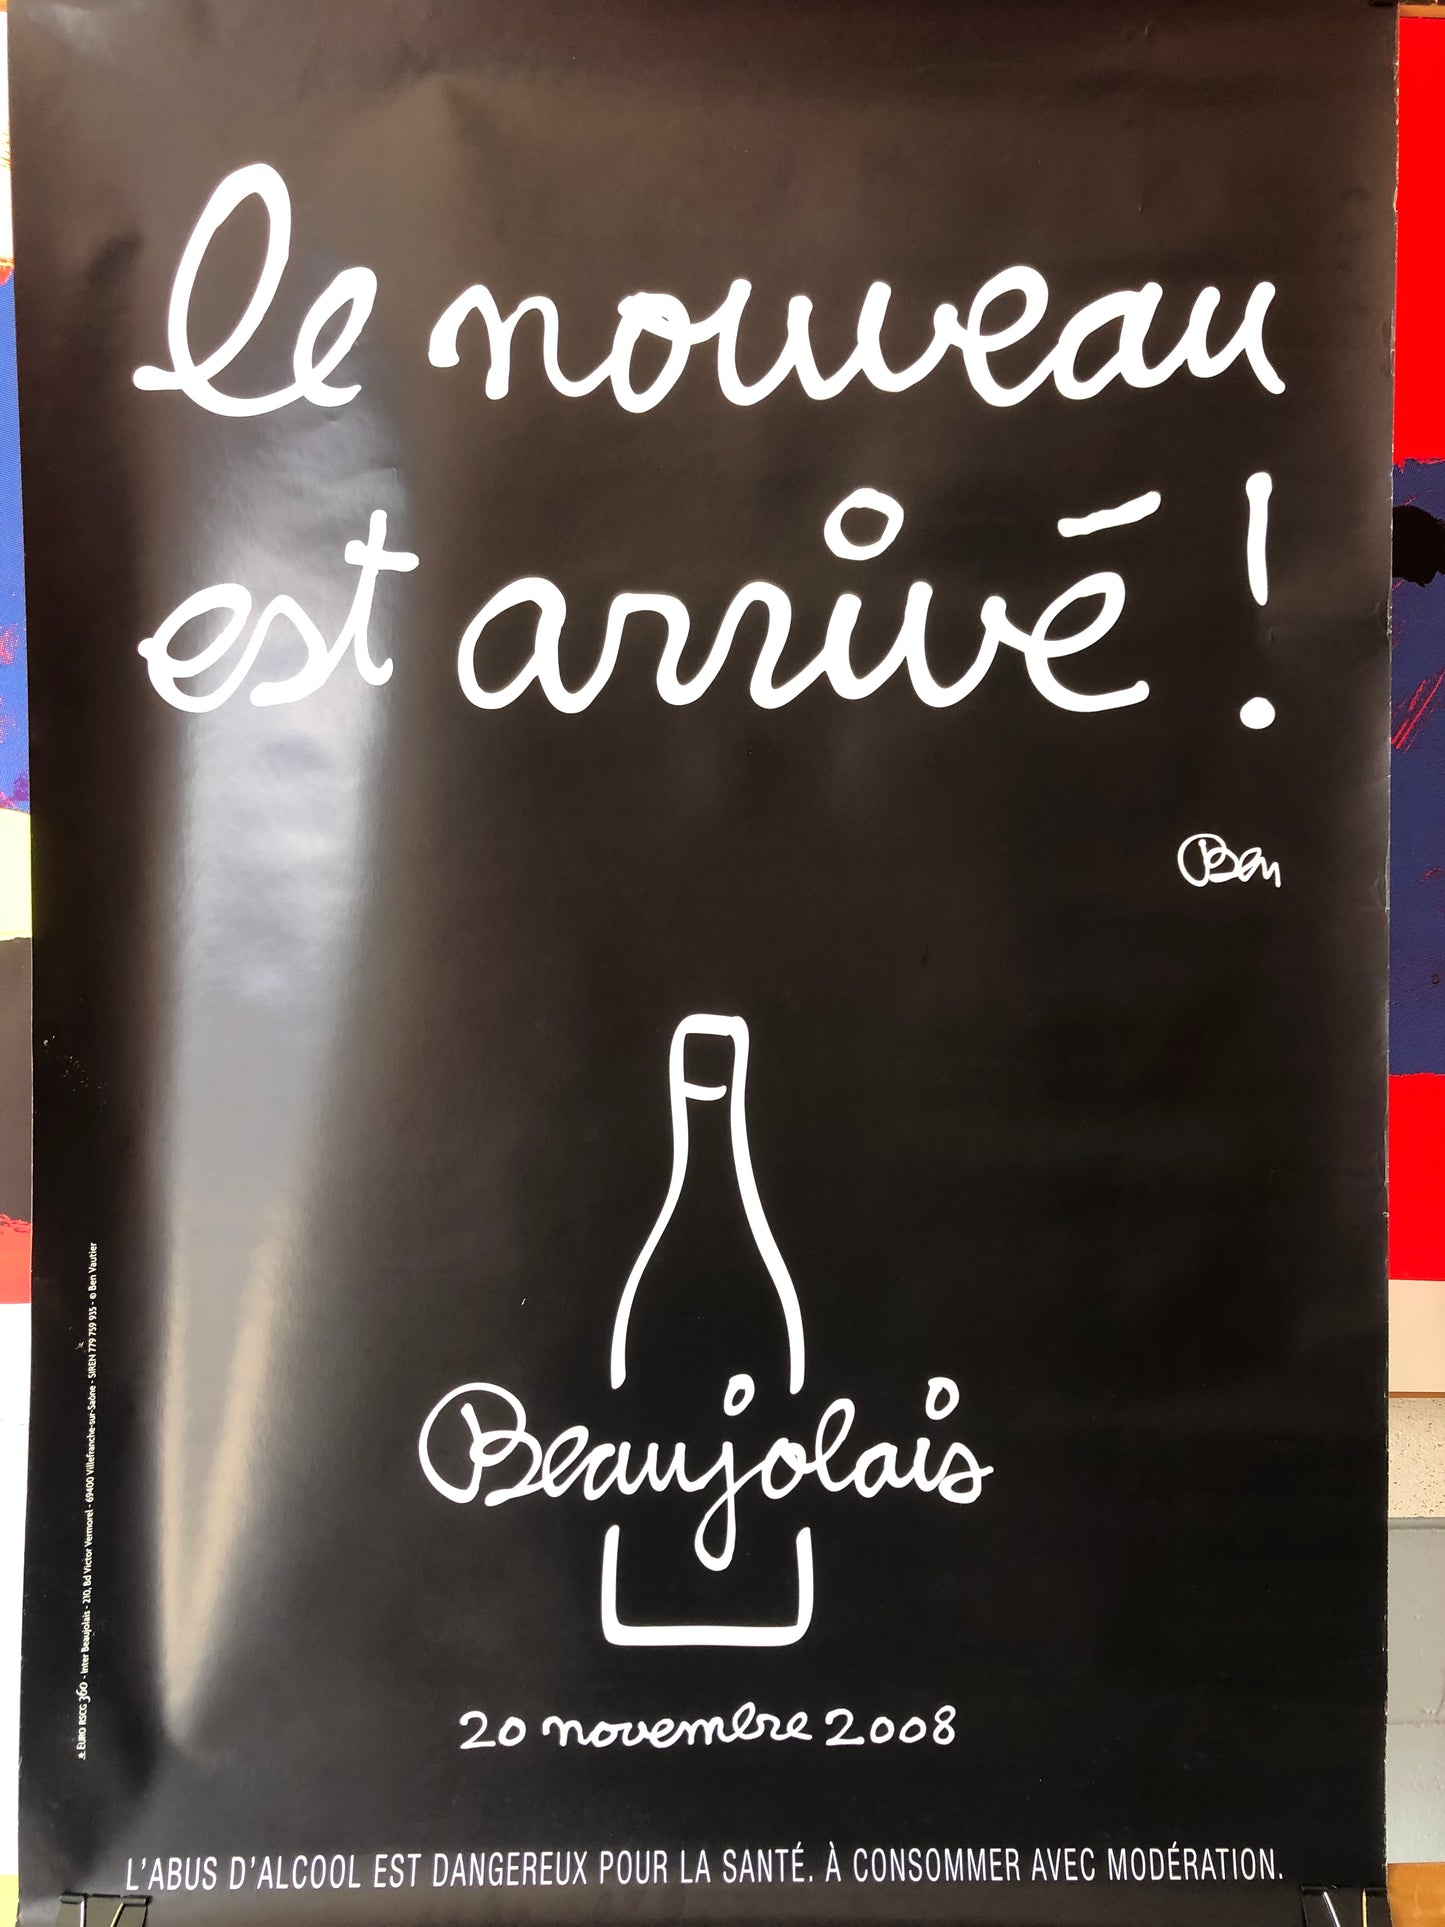 Le Nouveau est Arrive! - Beaujolais Advertisement